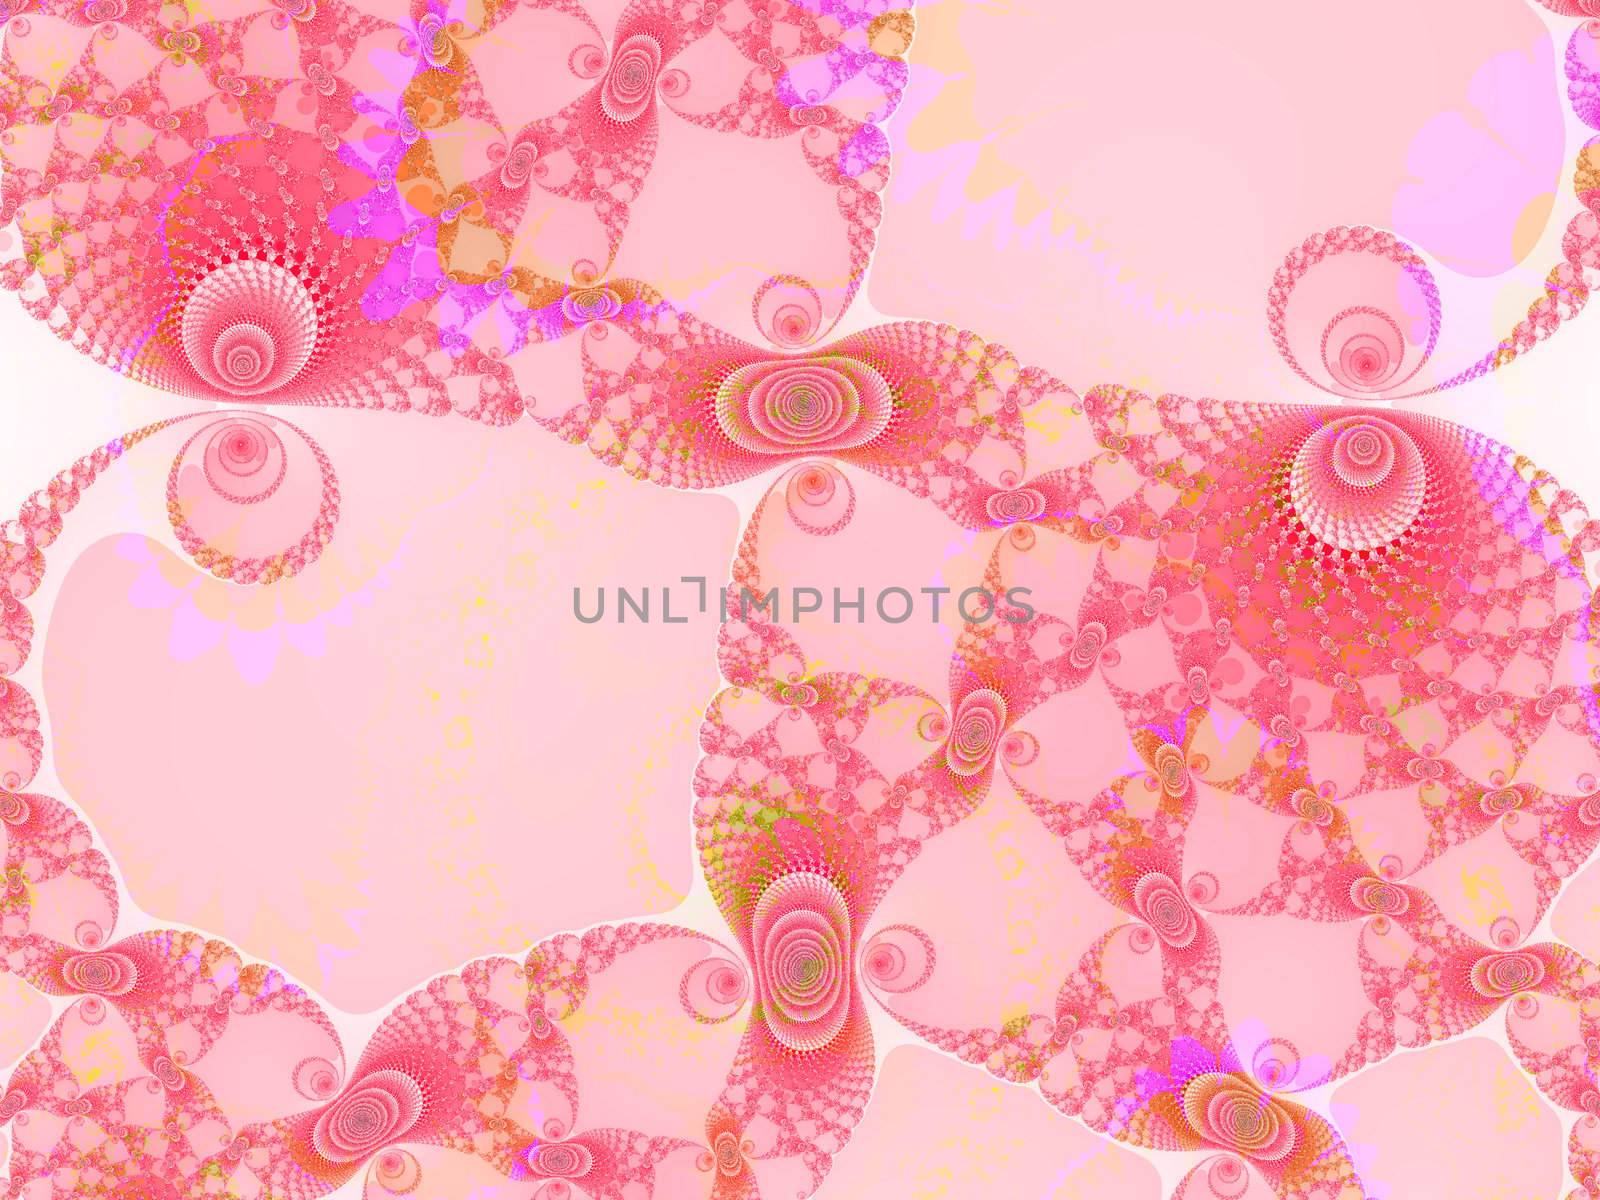 Light Pink Spiral Fractal 2d Pattern for Background Design by bobbigmac